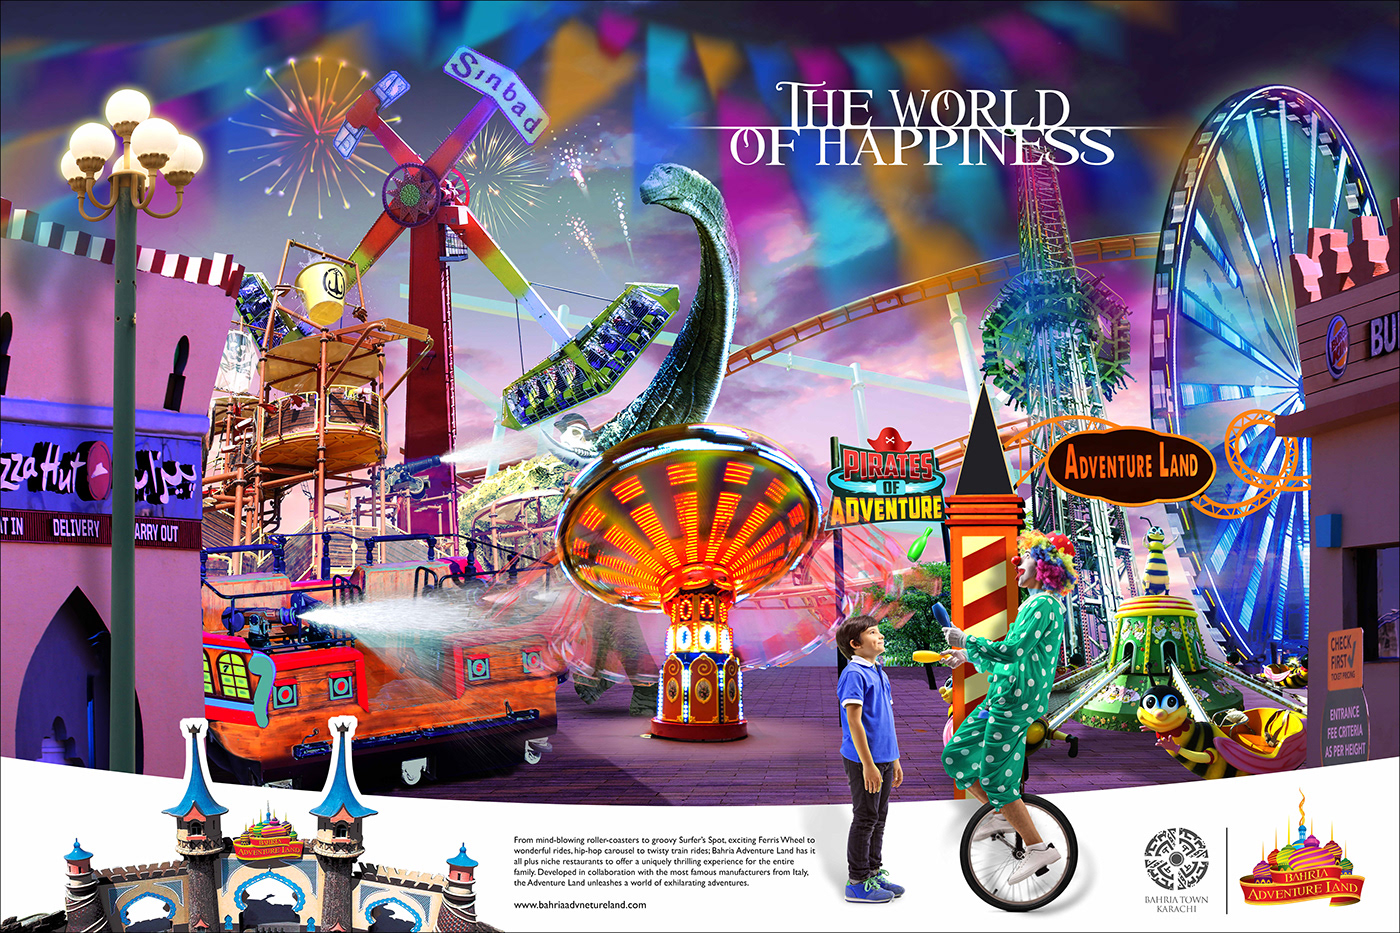 Theme Park adventure land karachi Pakistan Six Flags Ocean Park adventure amusement park rides